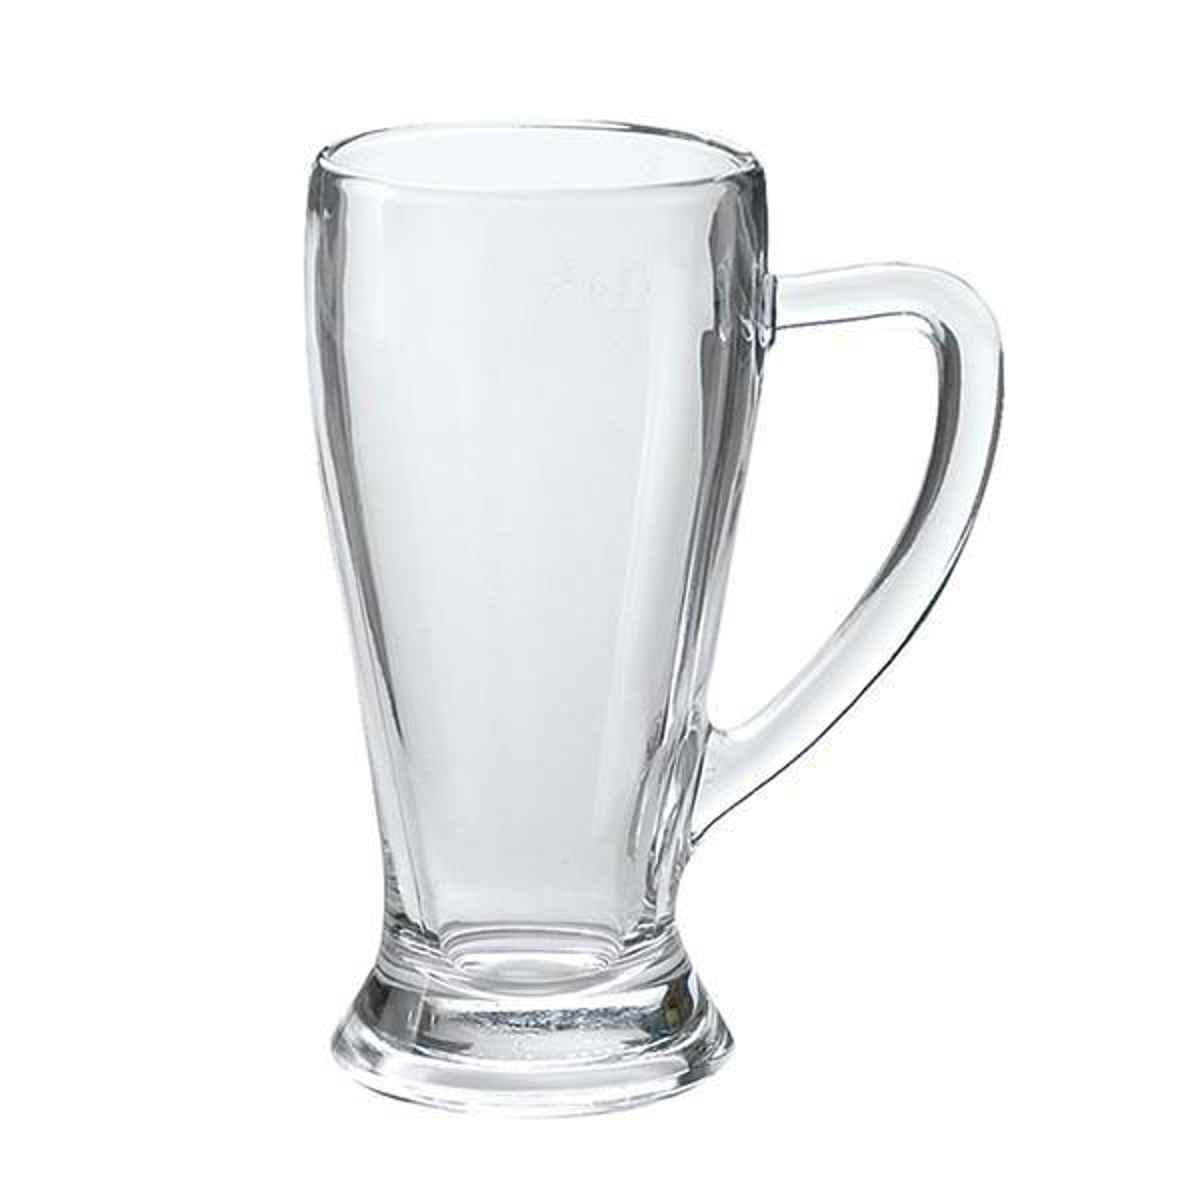 ボルミオリ・ロッコ ビアグラス 380ml BAVIERA バビエラ ガラス （ ビールグラス ビアタンブラー グラス コップ ガラス製 ビール お酒 シ